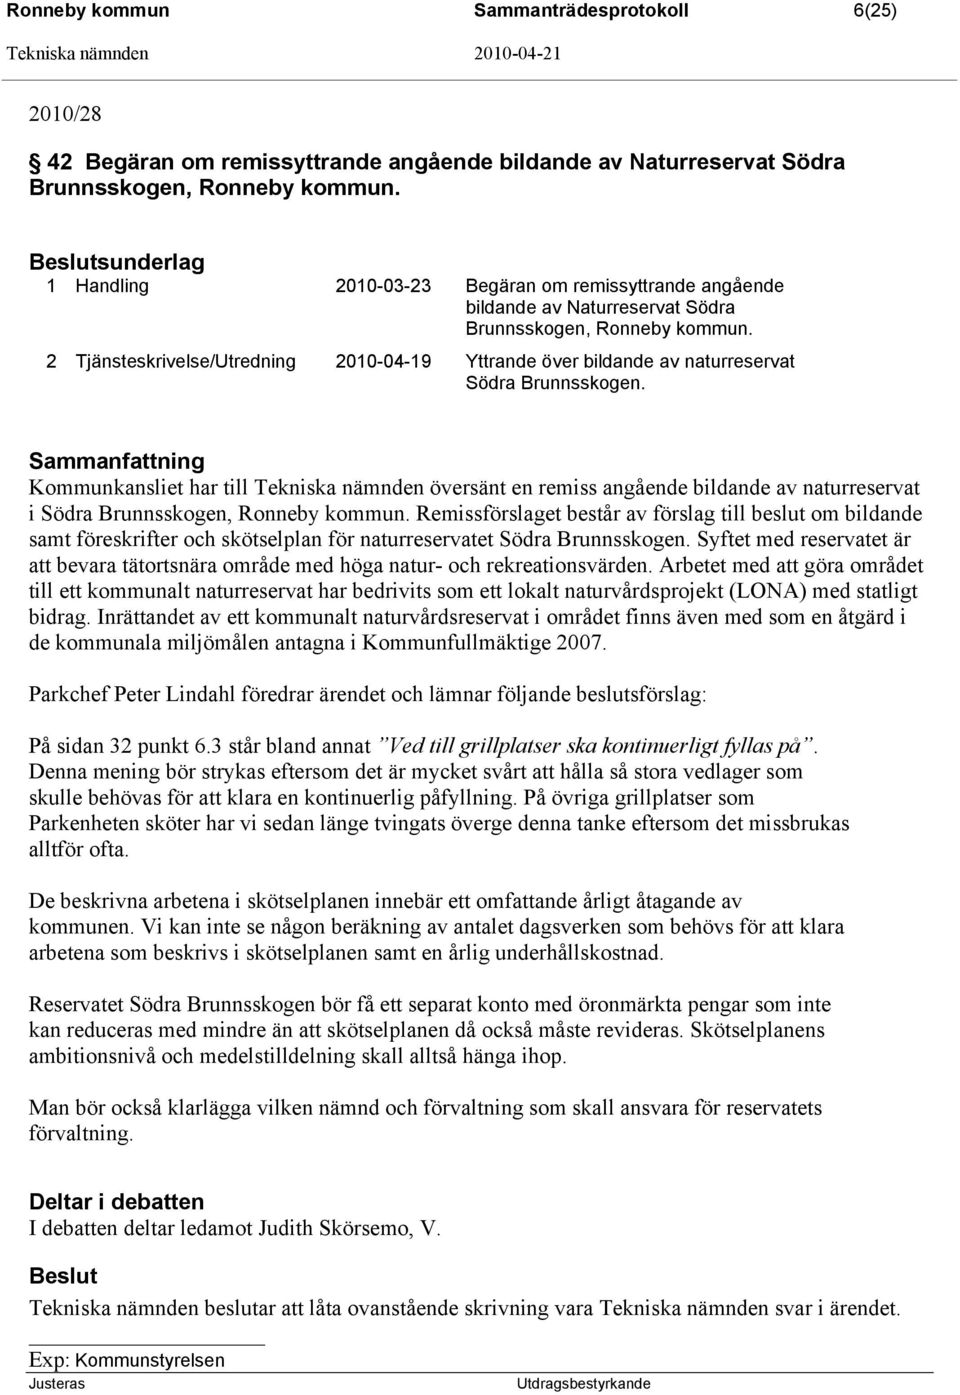 2 Tjänsteskrivelse/Utredning 2010-04-19 Yttrande över bildande av naturreservat Södra Brunnsskogen.